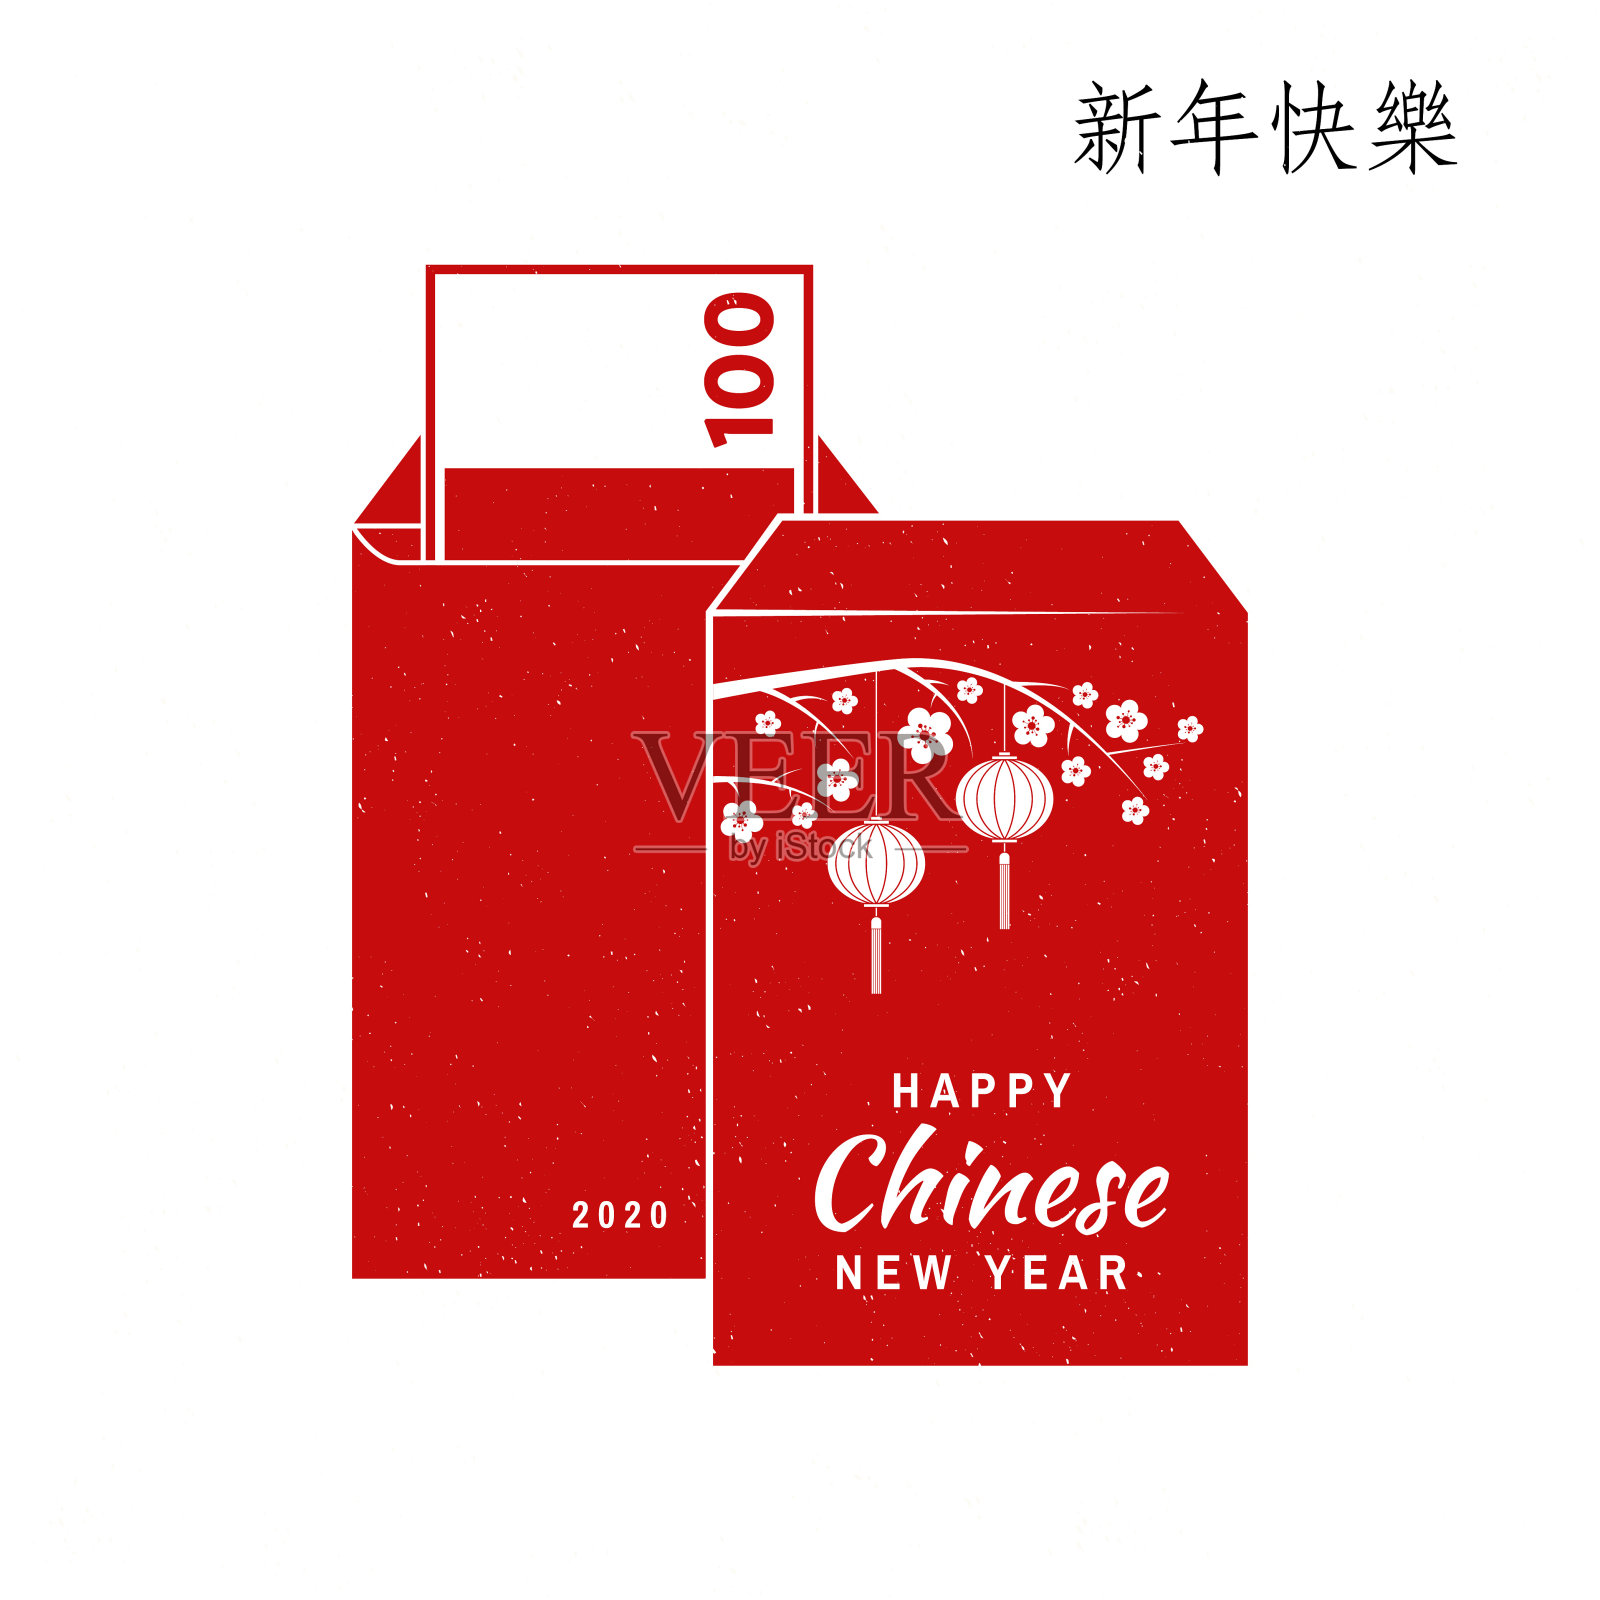 春节快乐设计。贺年经典明信片。中国人用红包做标志。横幅为网站模板中文翻译-新年快乐设计元素图片